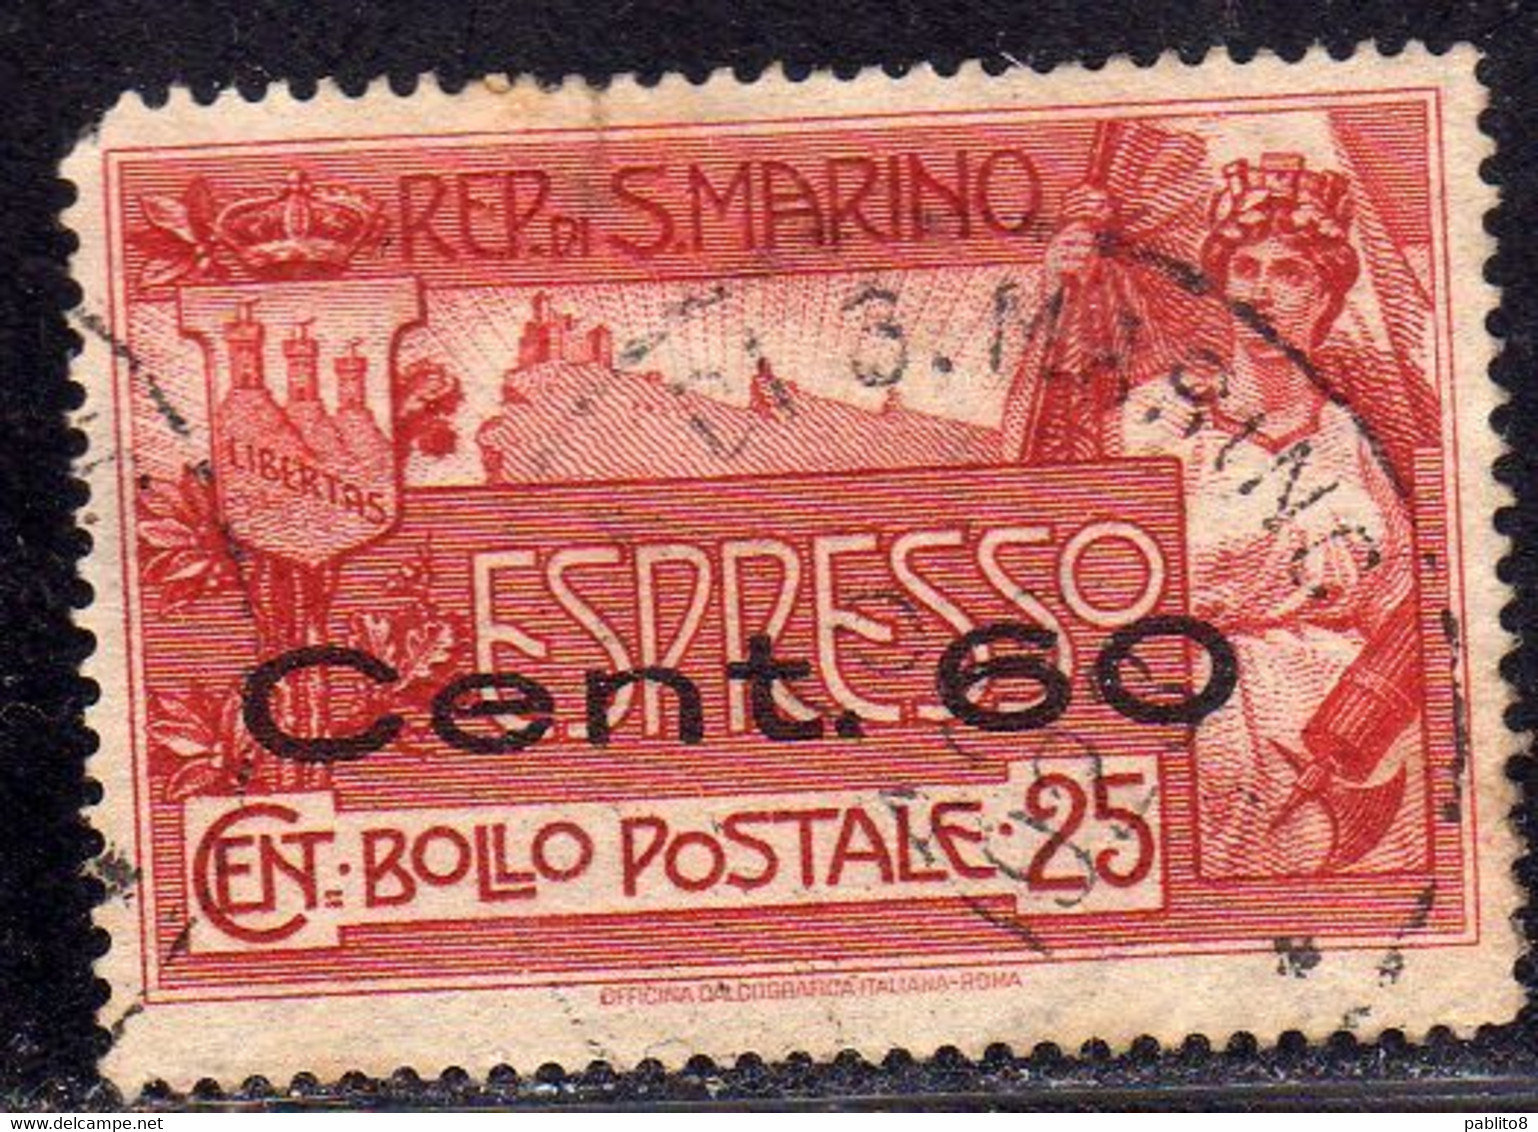 REPUBBLICA DI SAN MARINO 1923 ESPRESSO SPECIAL DELIVERY CENT. 60 SU 25c USATO USED OBLITERE' - Exprespost